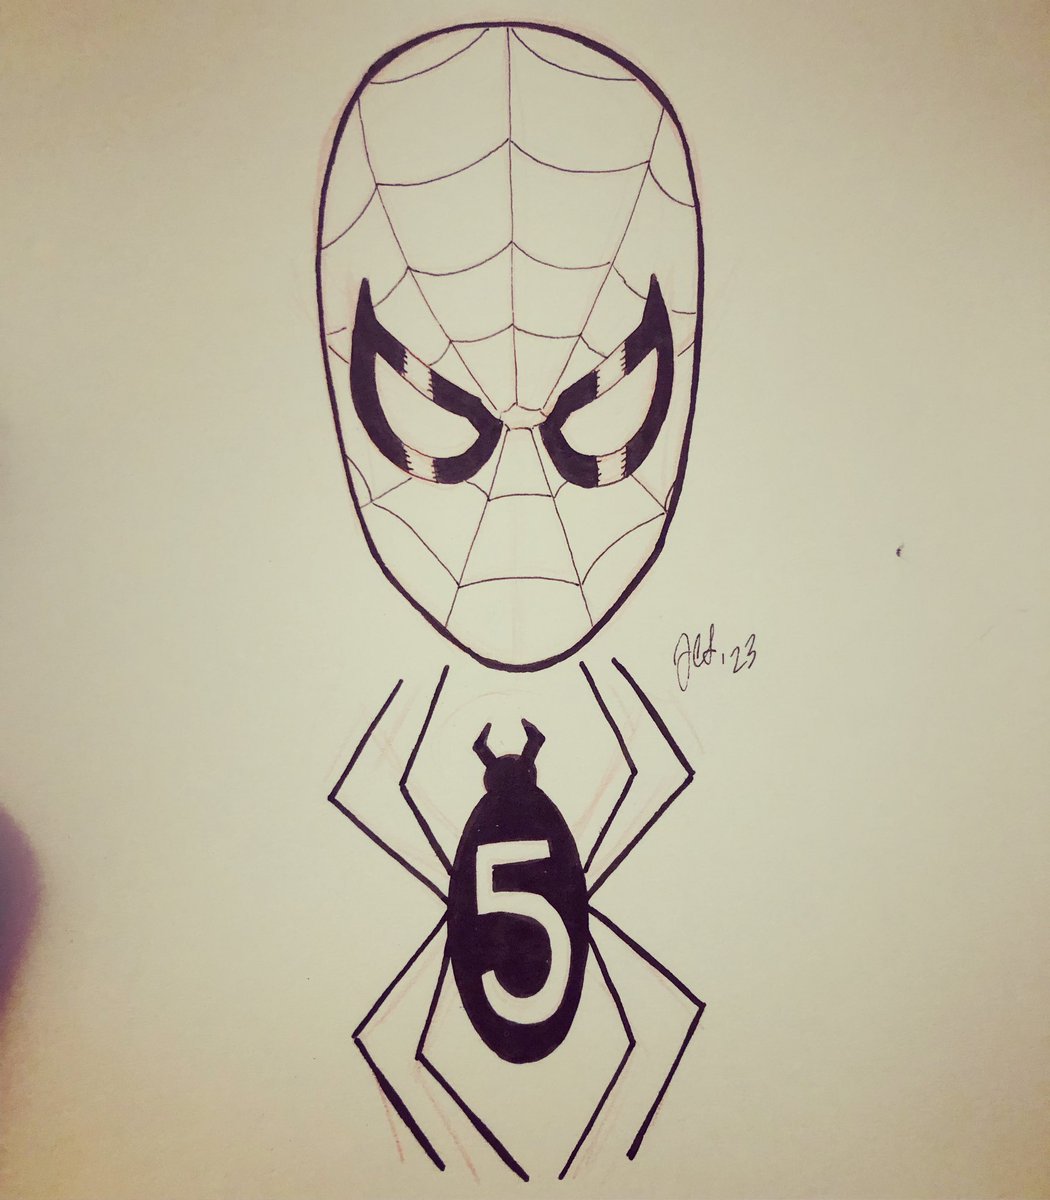 Spider-Man (Fantastic 5) Sketch! @marvel #peterparker #spiderman #marvel comics #comicbooks #drawings #art #myart #fantasticfive #jchristopherschmidt #illustrator #illustration #penandink #comicartist #drawing #sketch